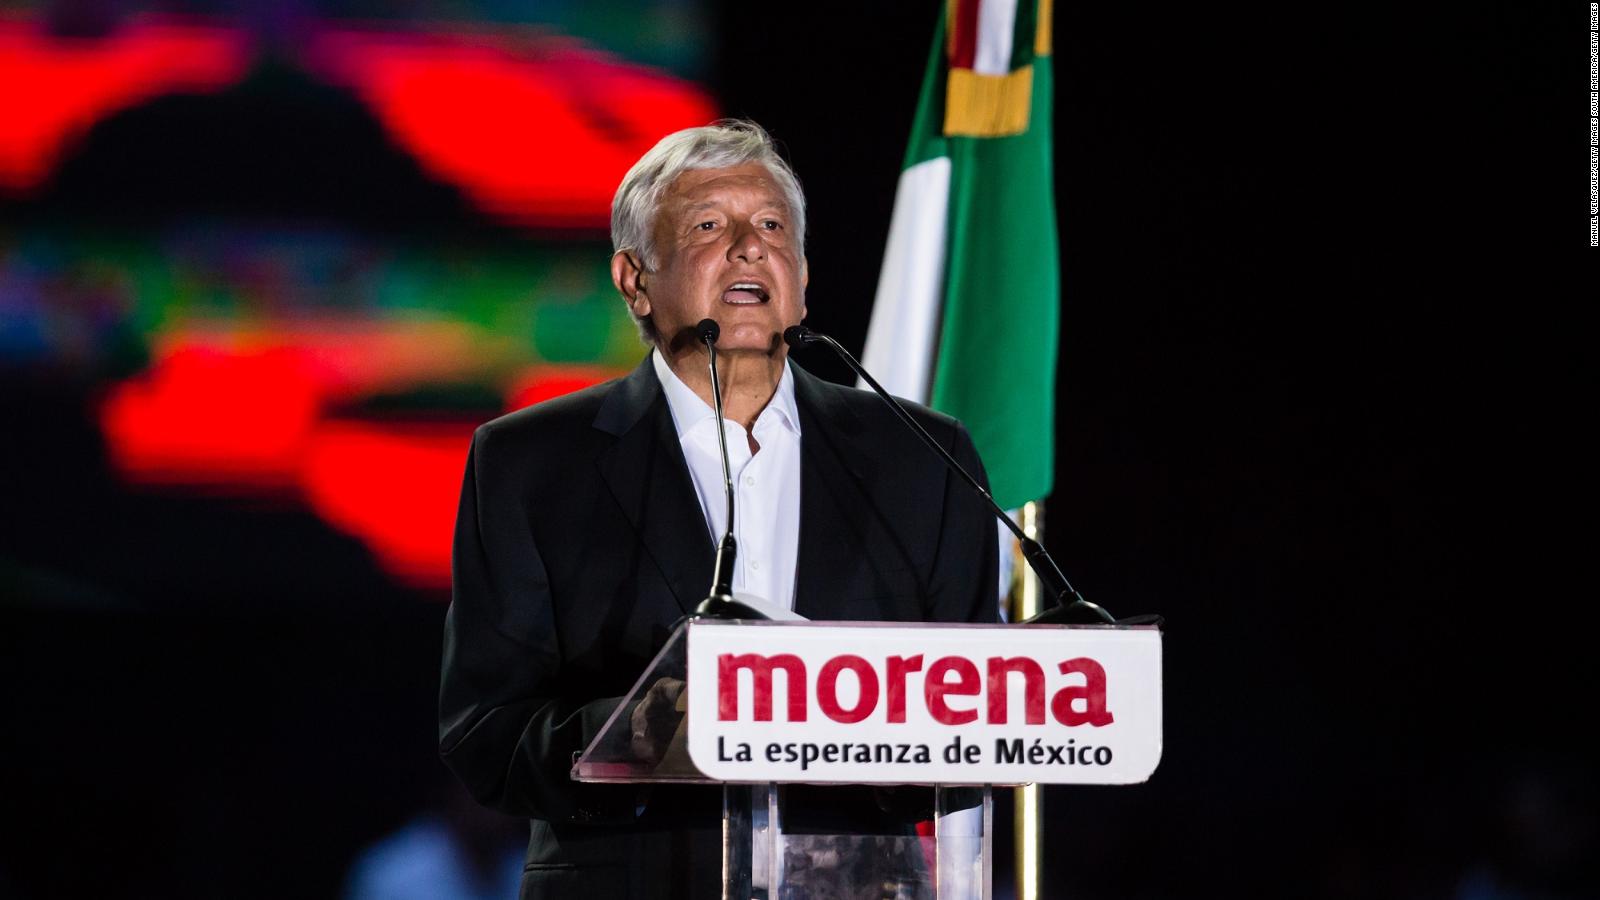 Intelectuales piden a mexicanos votar en contra de Morena en carta abierta  - CNN Video